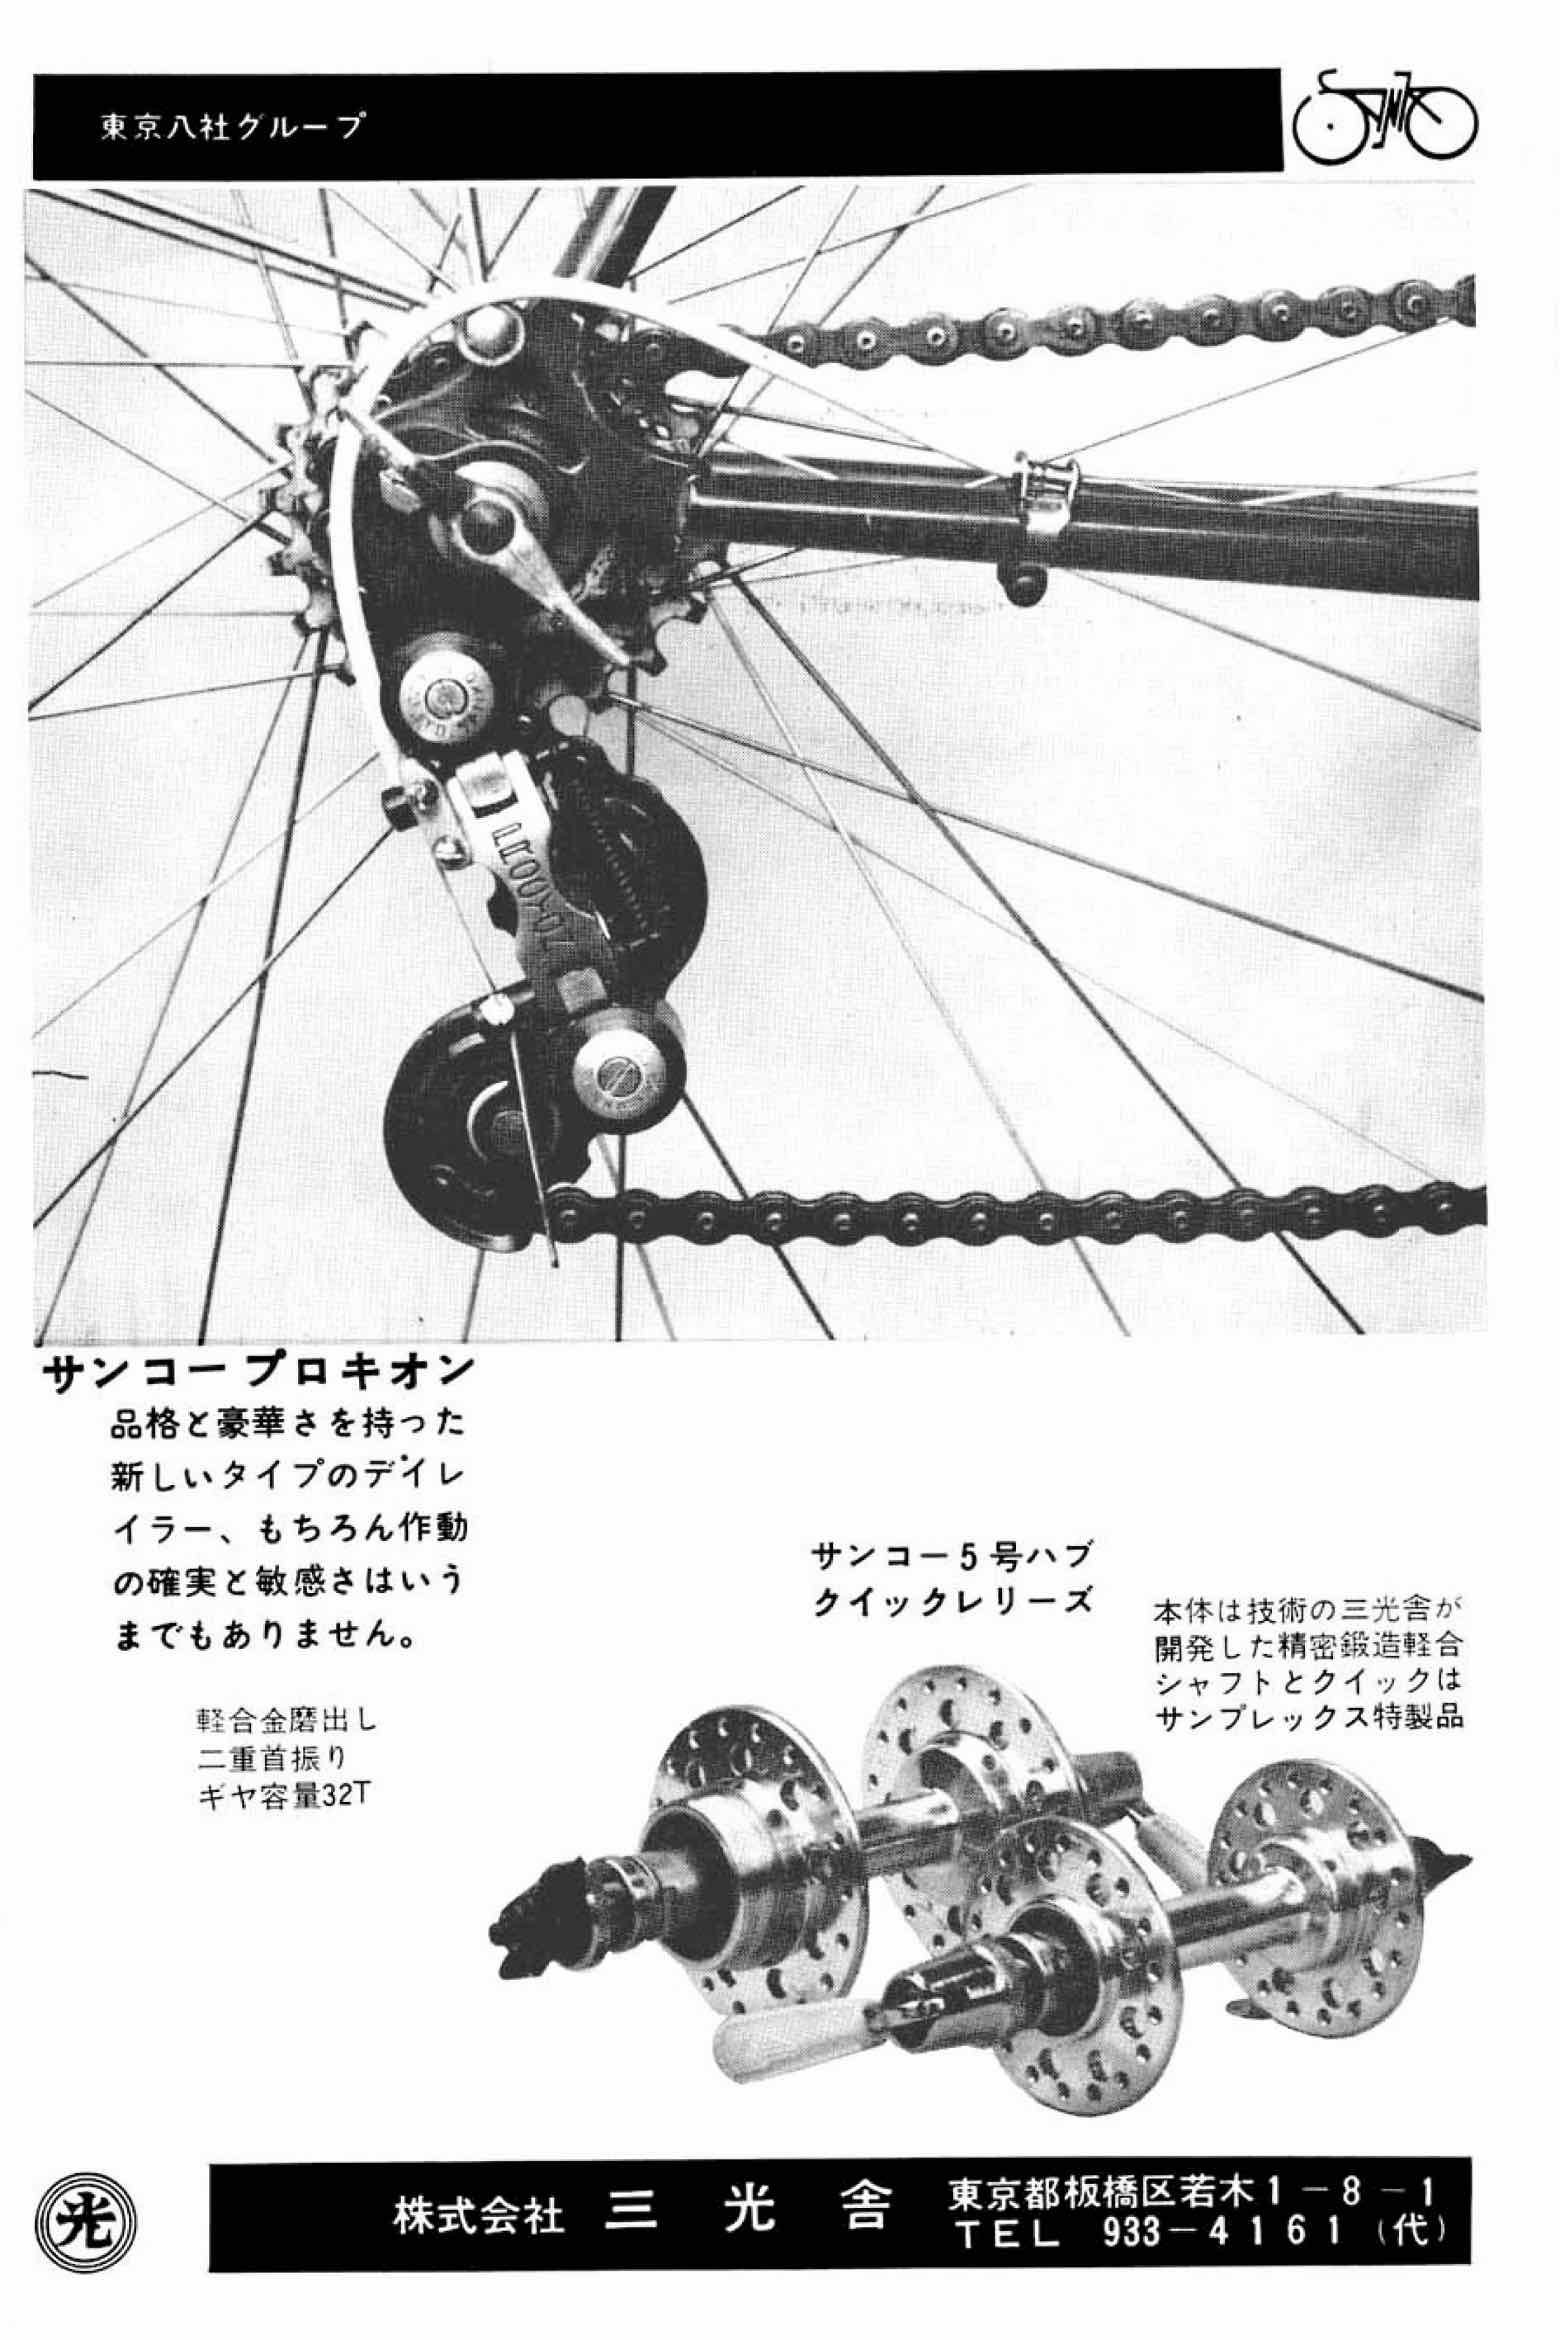 New Cycling November 1966 - Sanko advert main image